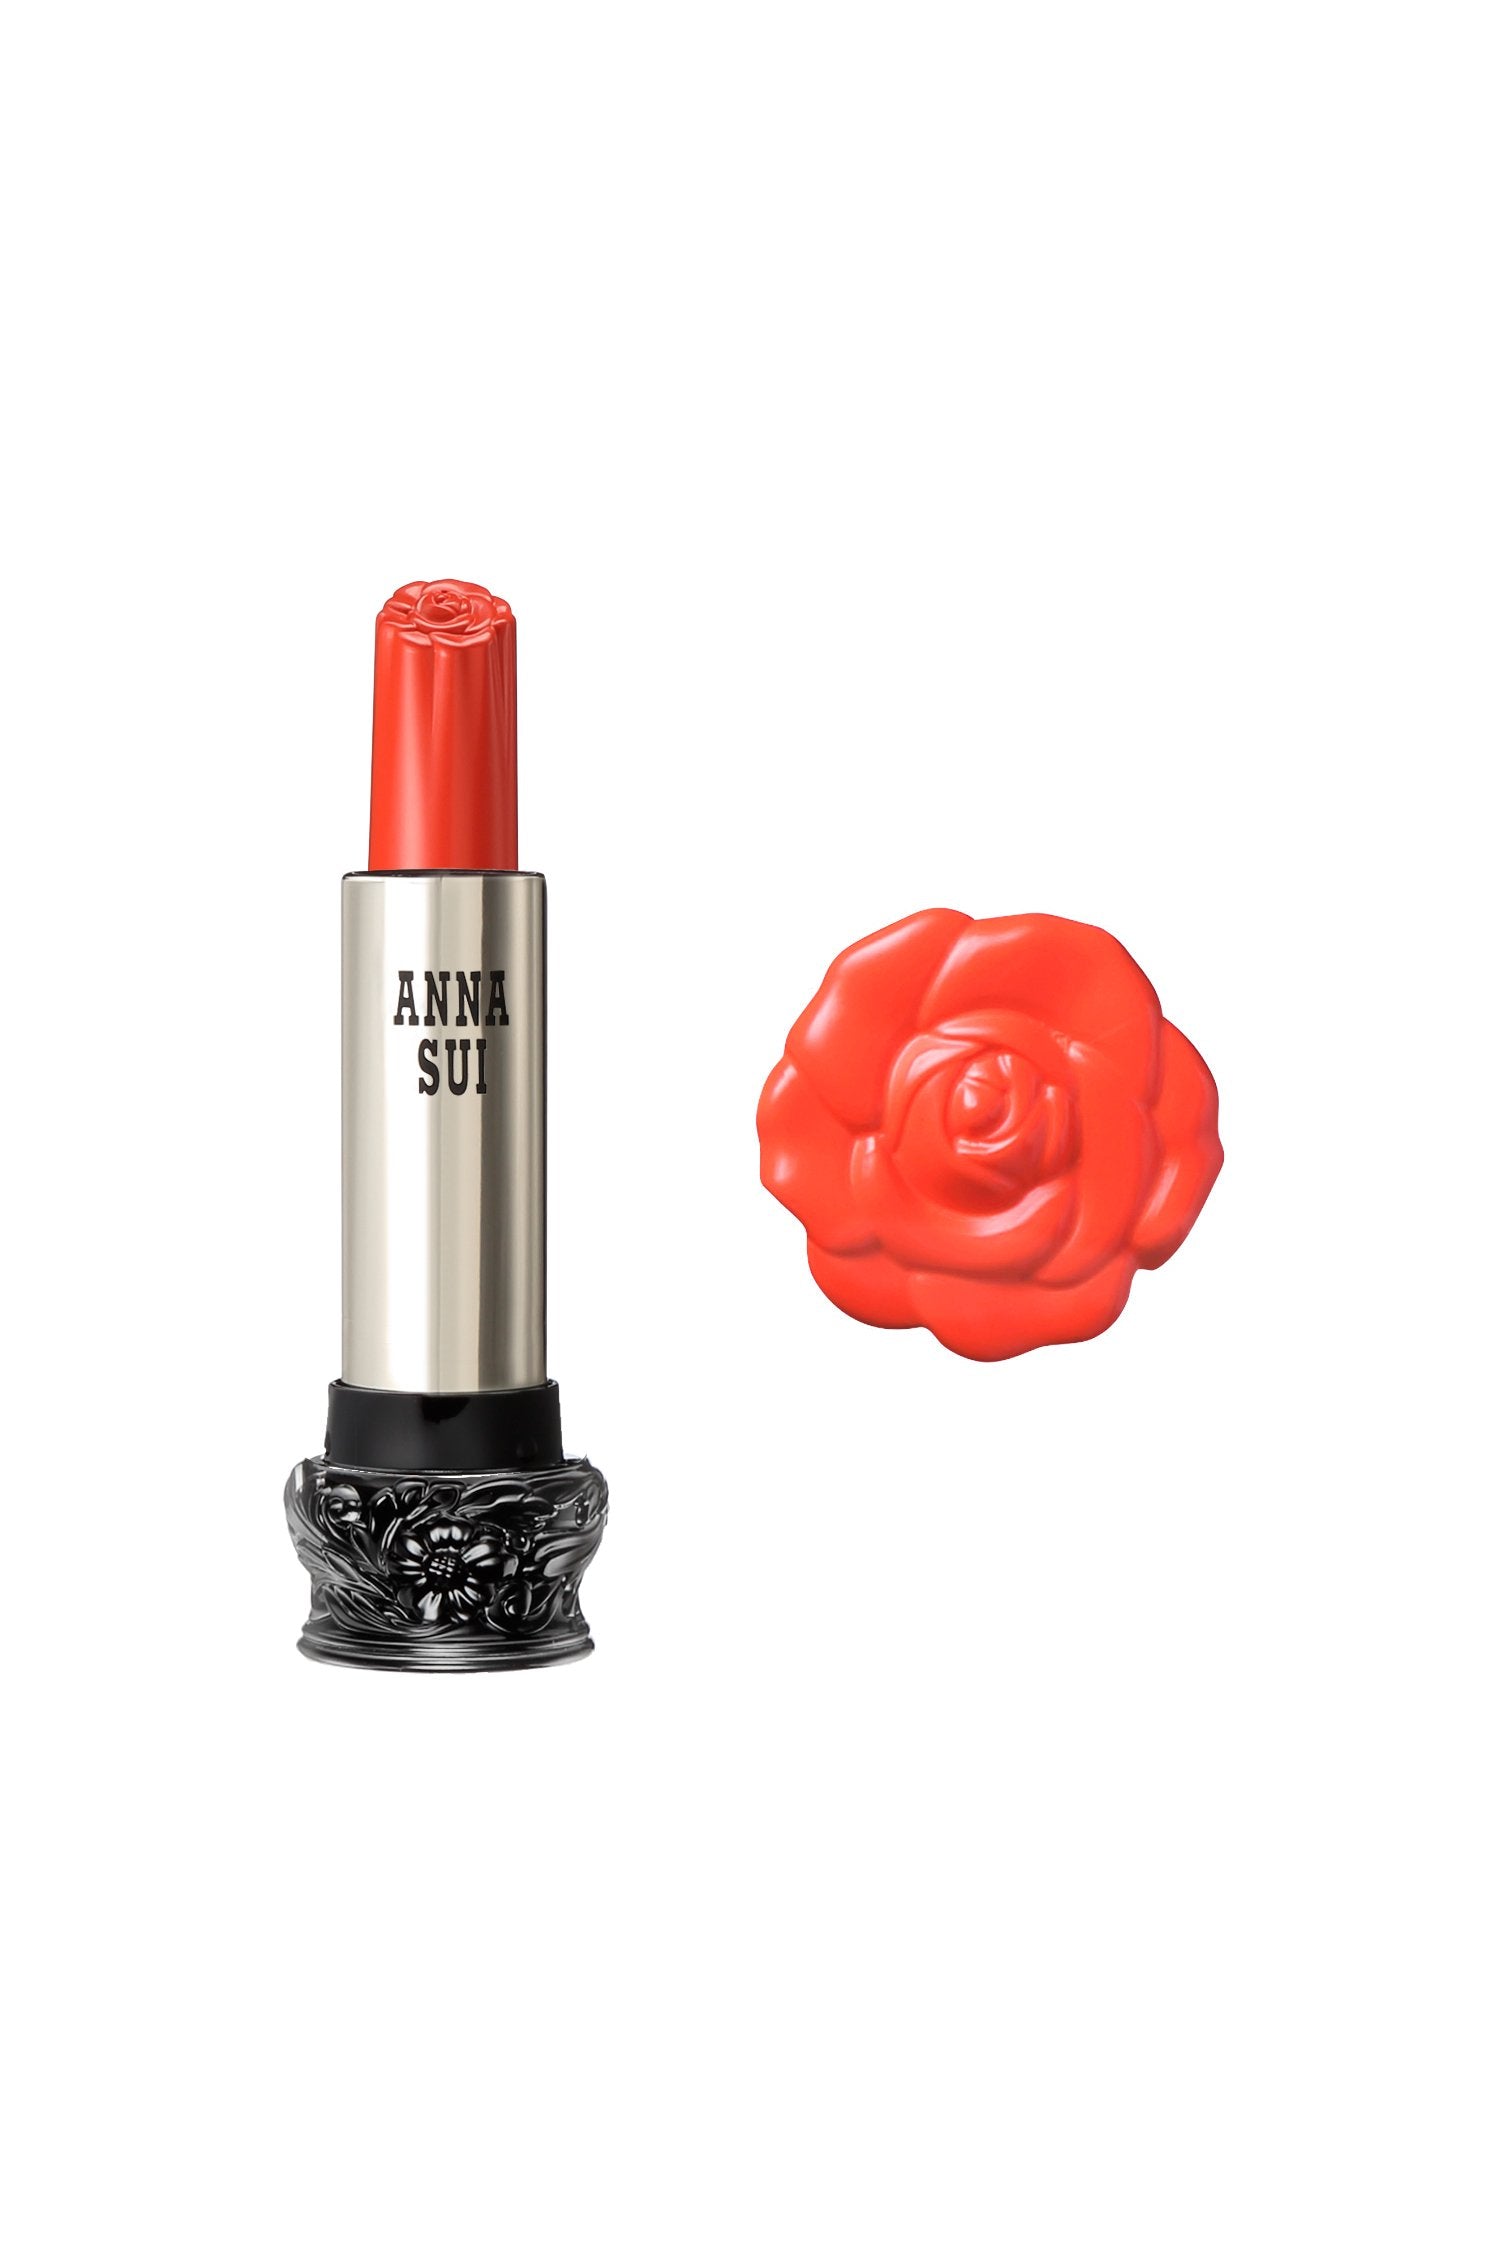 602 - Rossetto Bright Marigold F: Fairy Flower, in contenitore cilindrico, ampia base nera, disegno floreale inciso, corpo metallico